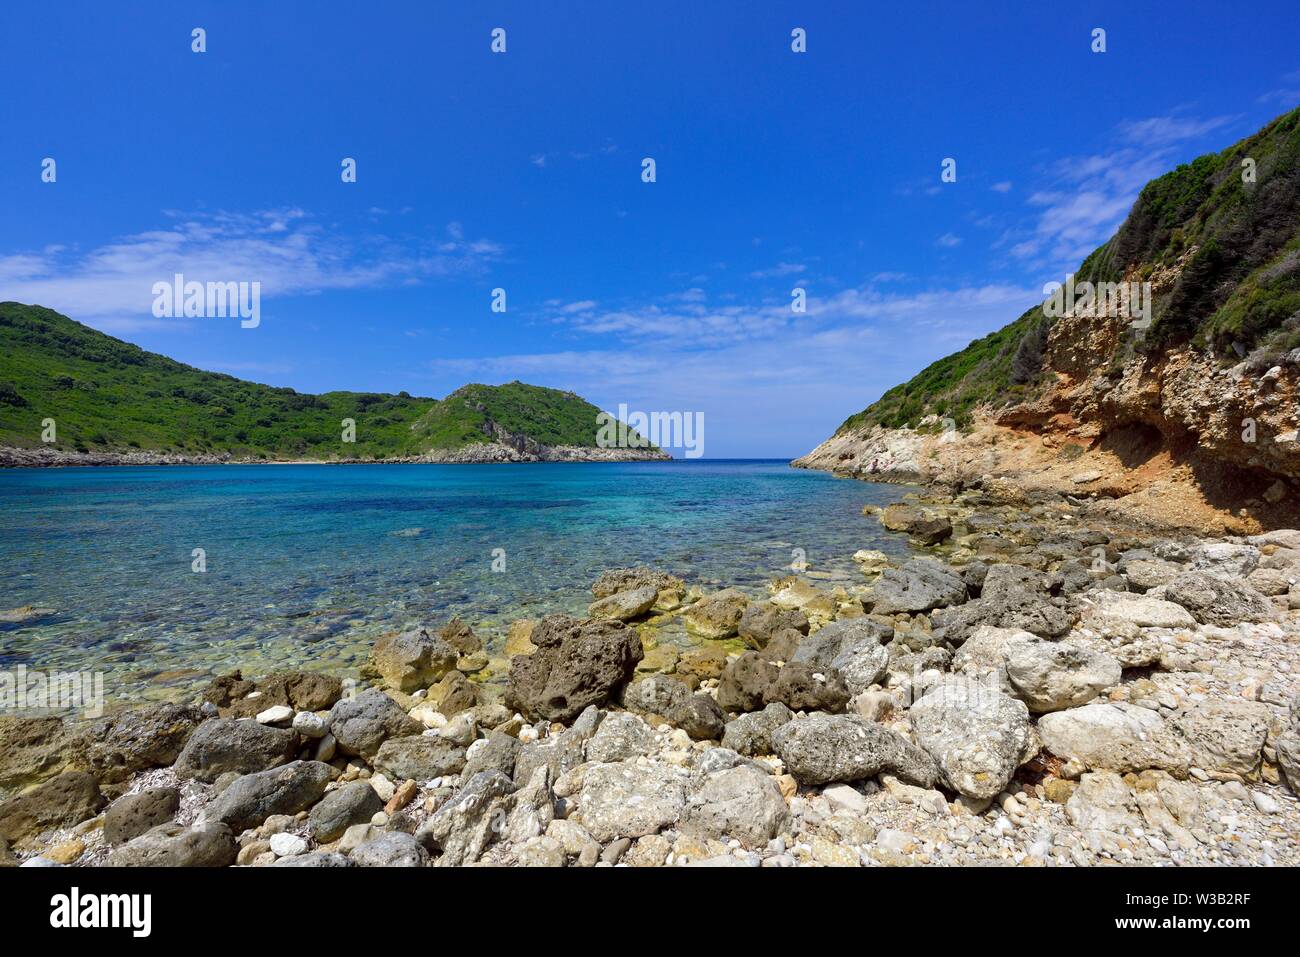 Porto timoni, Cape, Arillas Afionas, Corfou, îles Ioniennes, Grèce Banque D'Images